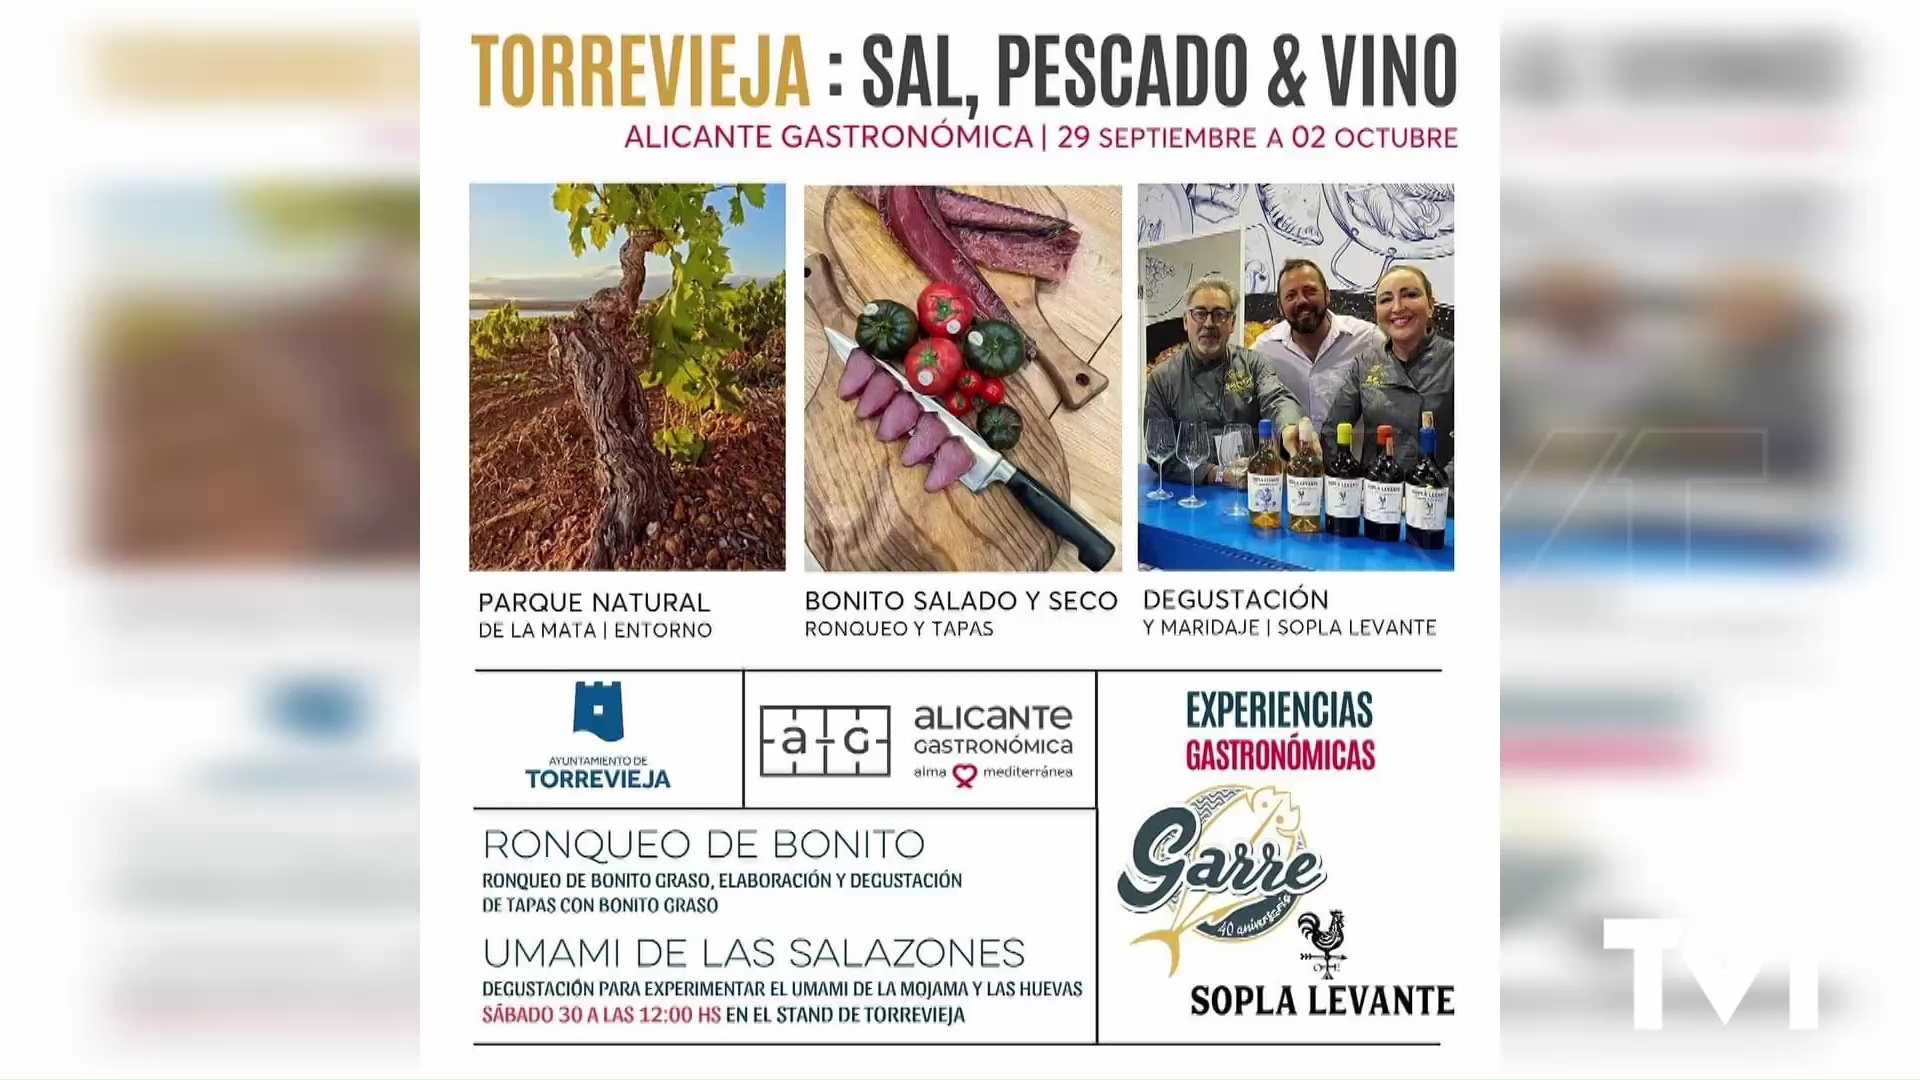 Imagen de El stand de Torrevieja en Alicante Gastronómica acogerá la presentación de «Torrevieja: sal, pescado y vino» 